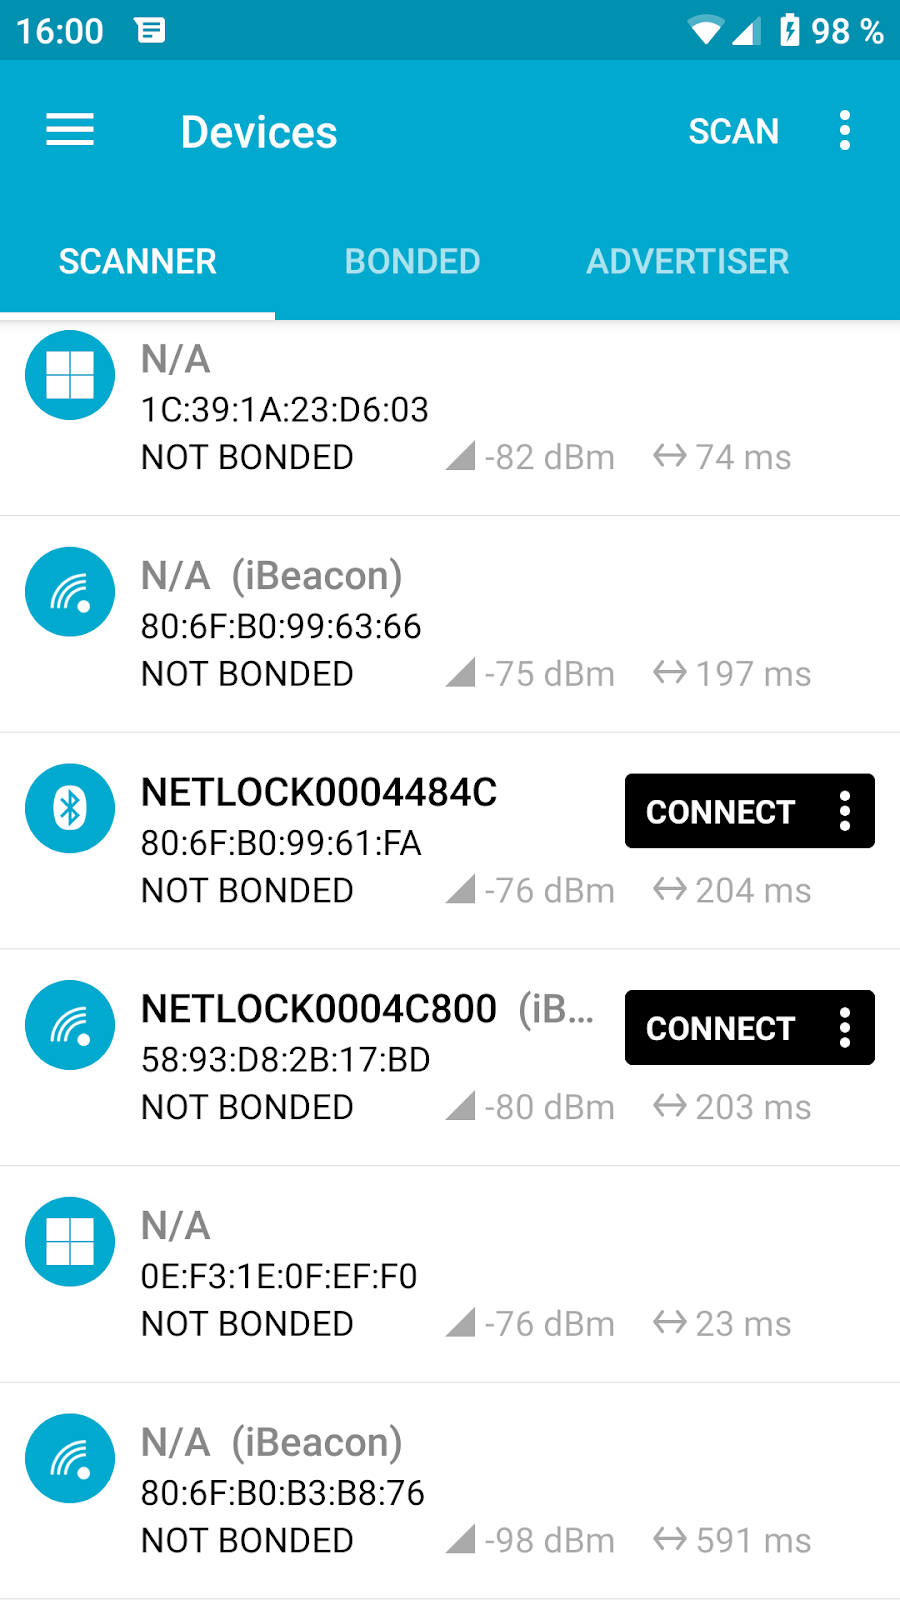 LUMA - Antirrobo Moto con Alarma y Localización GPS Bluetooth NETLOCK 905  Disc Lock Mediante App Android